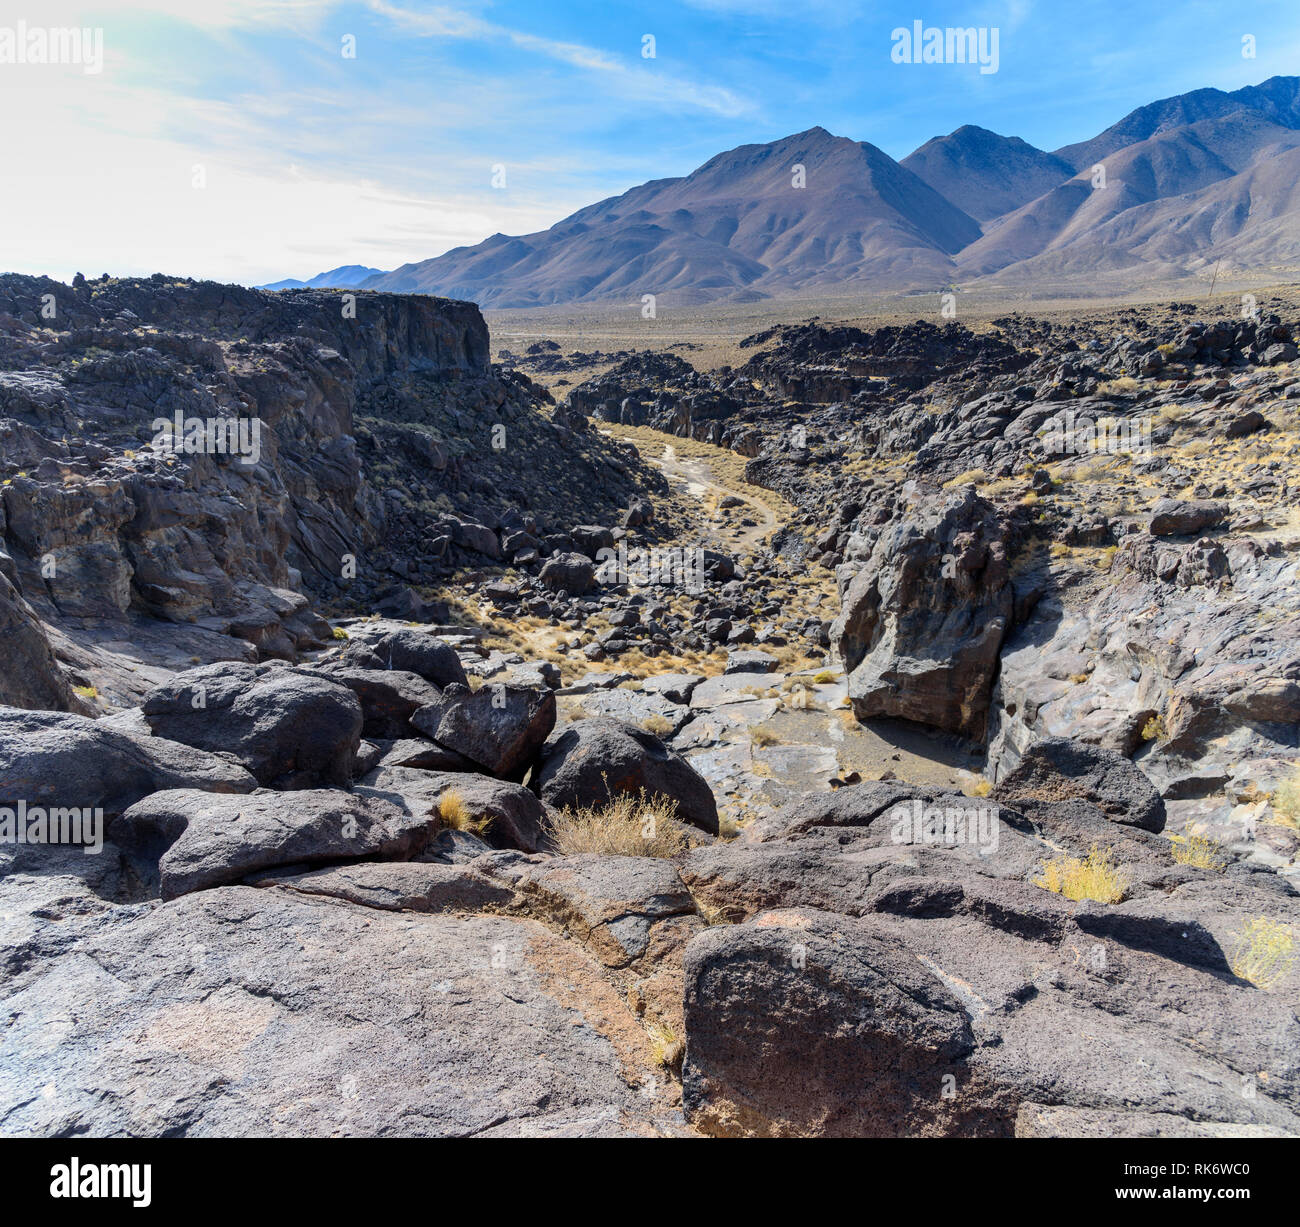 Le parc d'état de fossiles, de roches de lave champs couvert et canyon rocheux ci-dessous sur la vallée et au-delà des montagnes du désert aride sous ciel bleu avec des nuages blancs. Banque D'Images